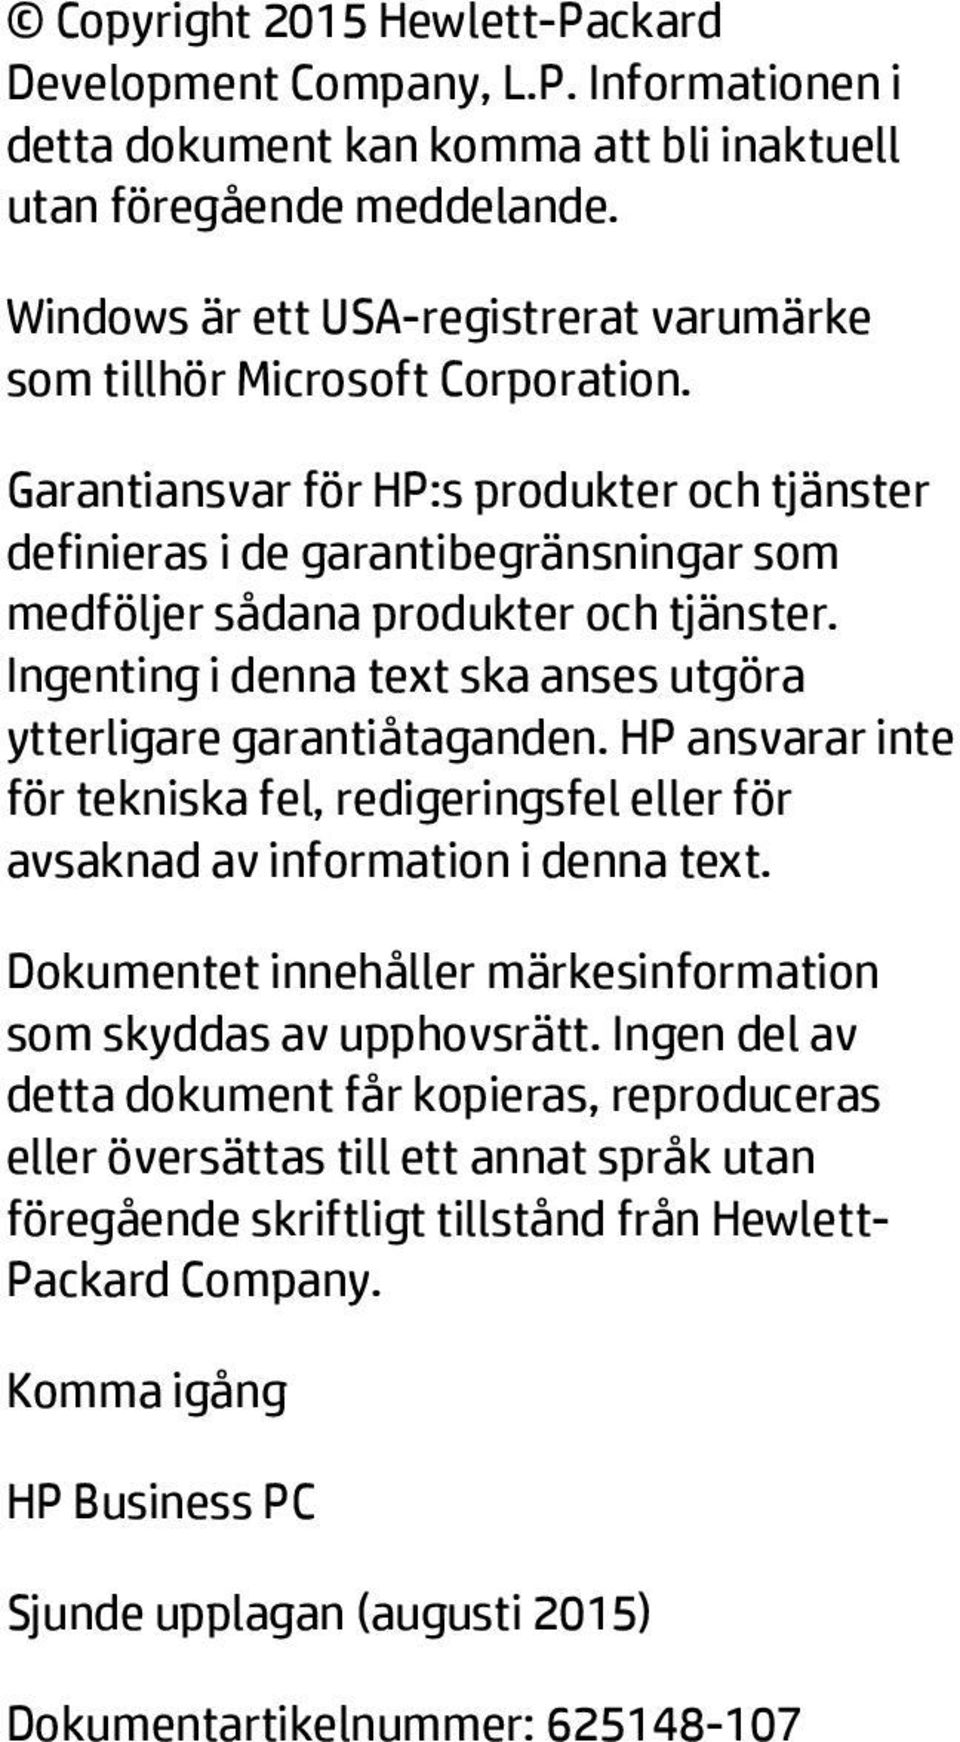 Garantiansvar för HP:s produkter och tjänster definieras i de garantibegränsningar som medföljer sådana produkter och tjänster. Ingenting i denna text ska anses utgöra ytterligare garantiåtaganden.